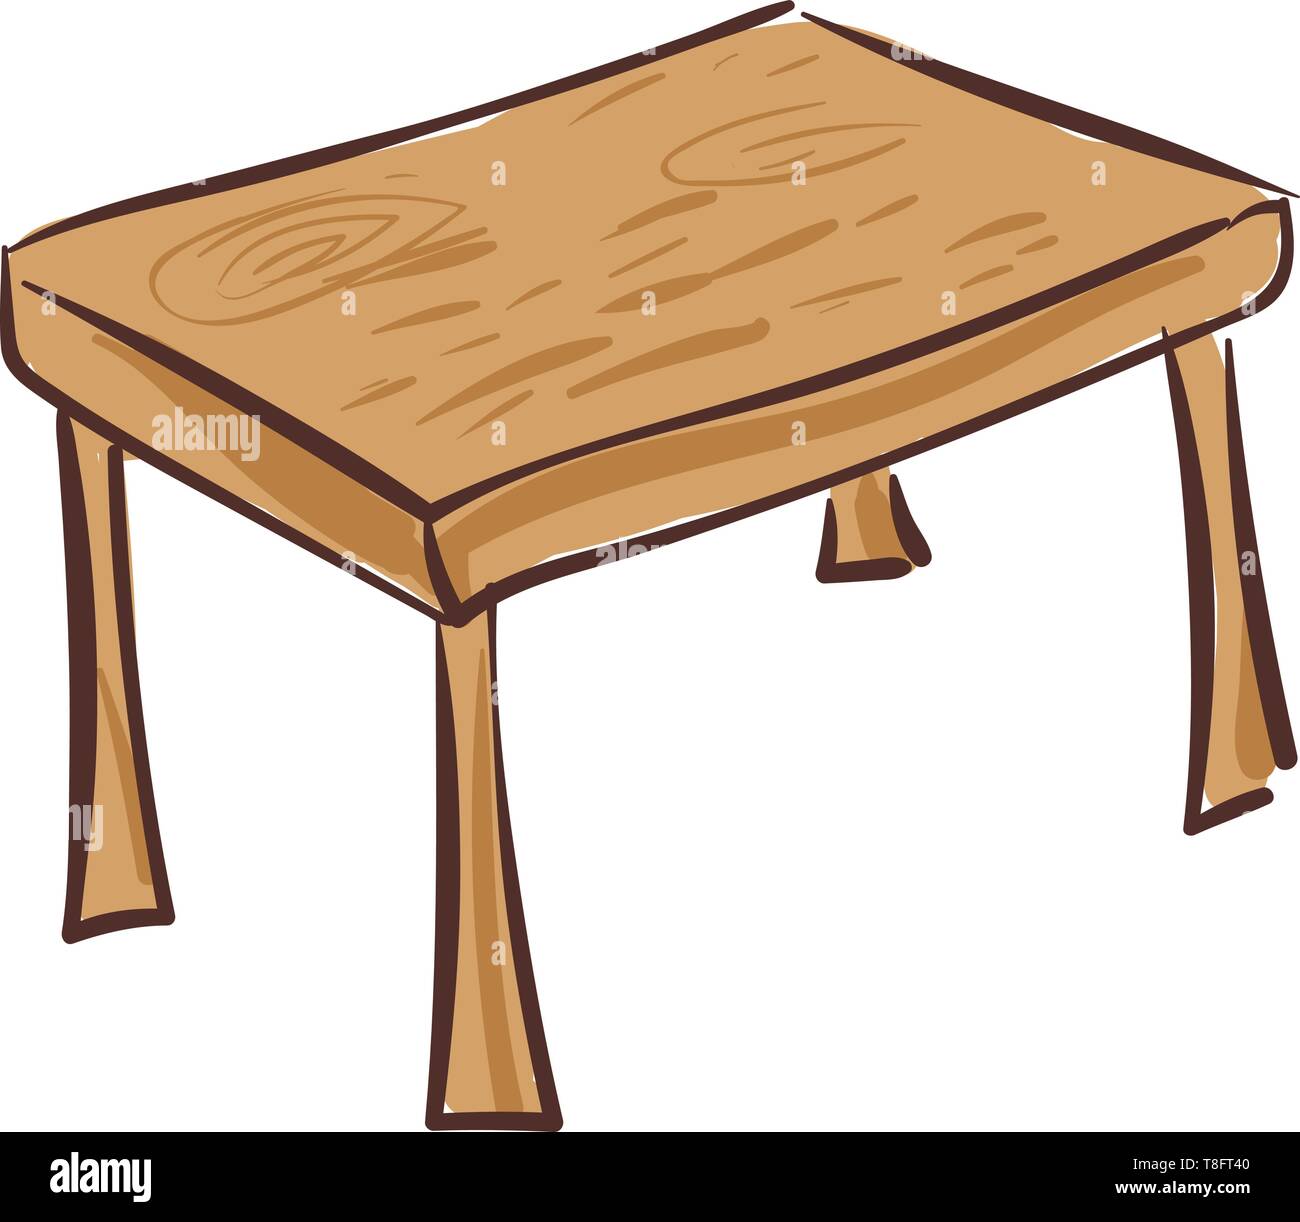 Einem Holztisch mit Shaker style Beine, die die klassischen Look und die Tischplatte Elemente anzuzeigen oder Erfrischungen servieren und die Mahlzeit als f genießen Stock Vektor